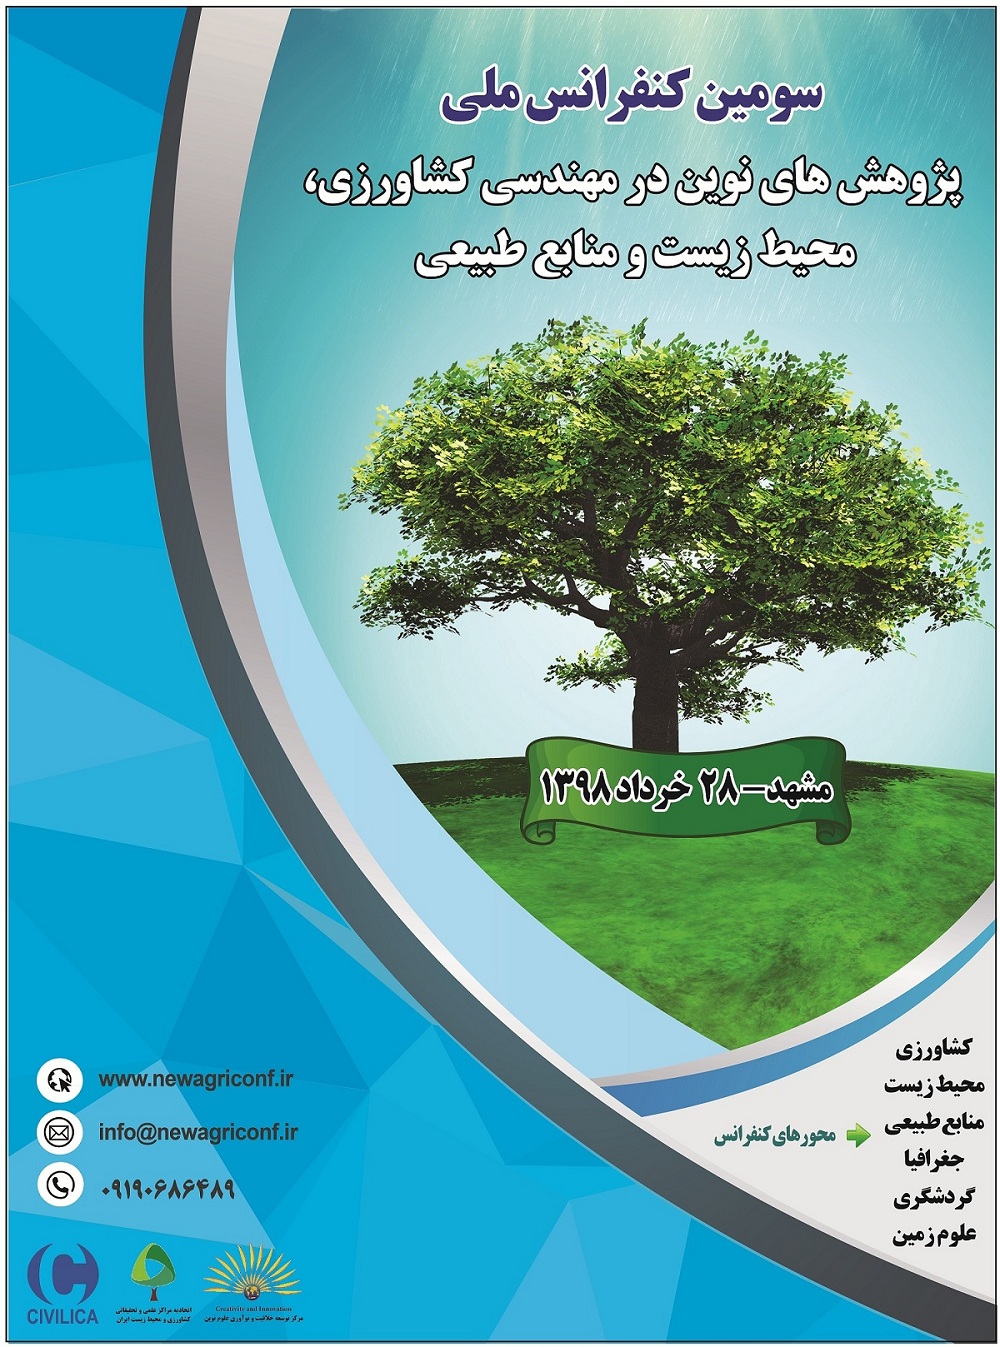 پوستر سومین کنفرانس ملی پژوهش های نوین در مهندسی کشاورزی، محیط زیست و منابع طبیعی